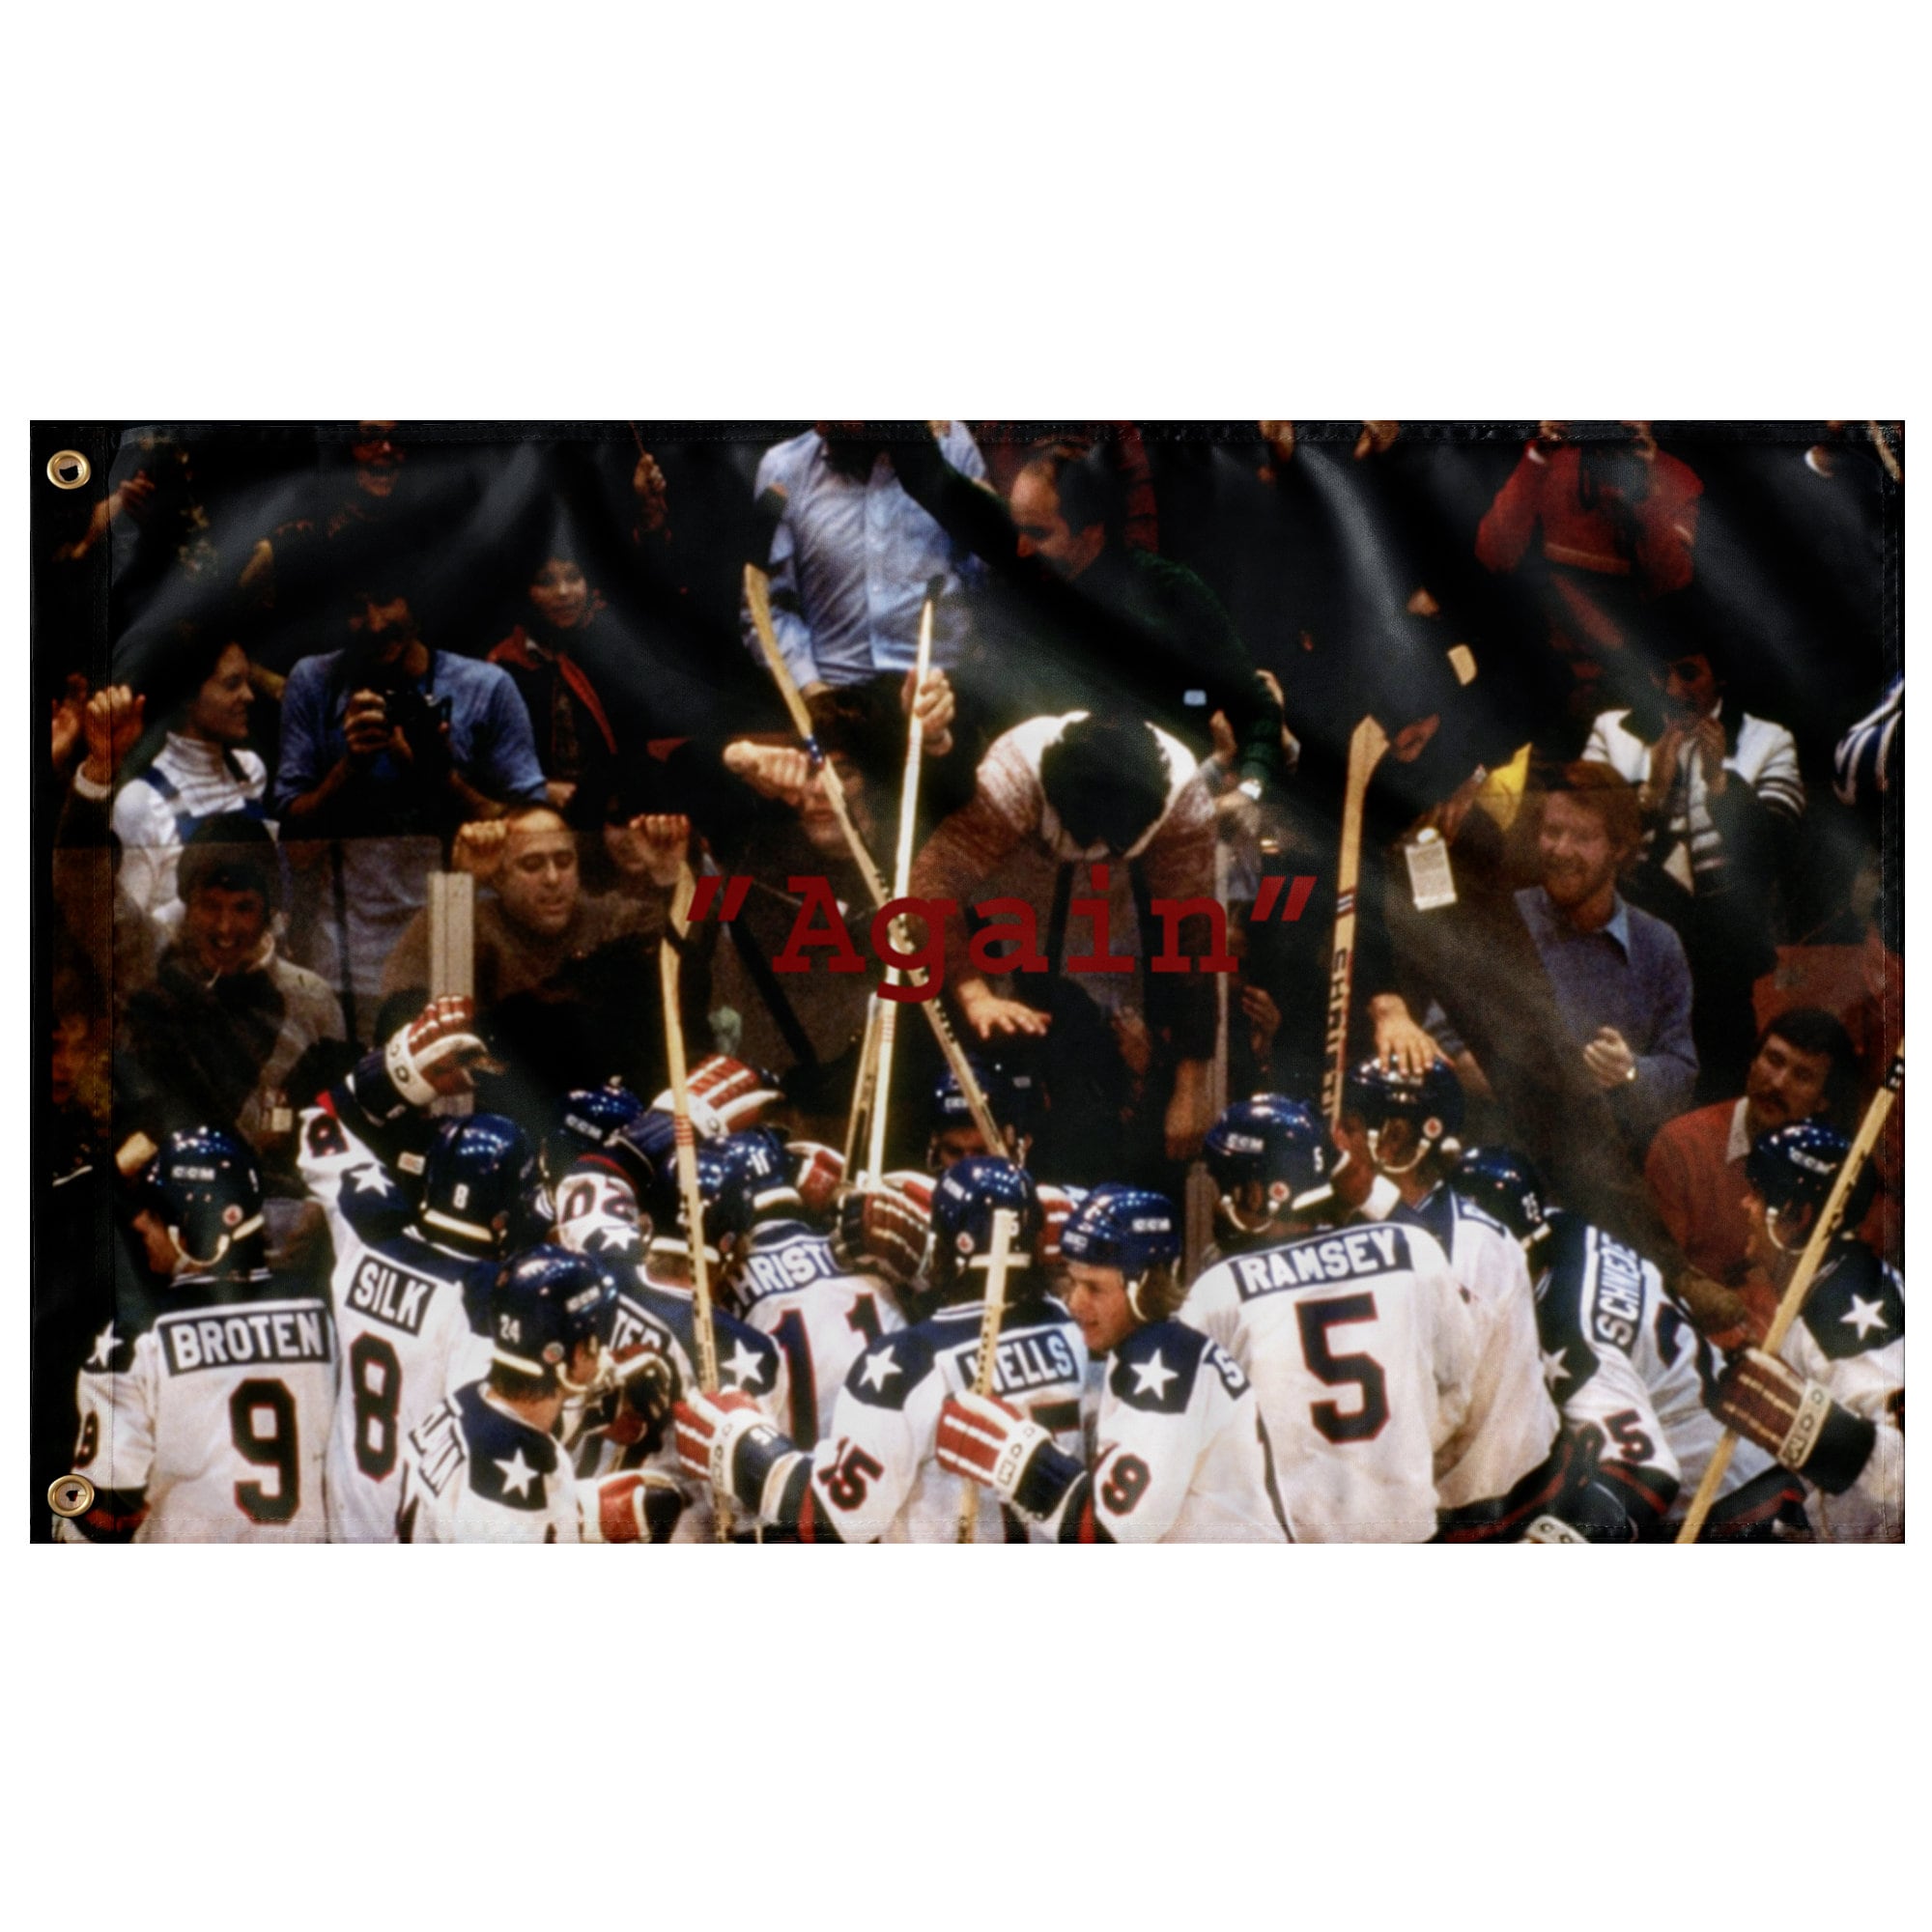 Mike Eruzione Jersey 1980 USA 30 Jim Craig Hockey Jersey Miracle On Ice 17  Jack O'Callahan Jersey Movie Stitched Sport Sweater - AliExpress